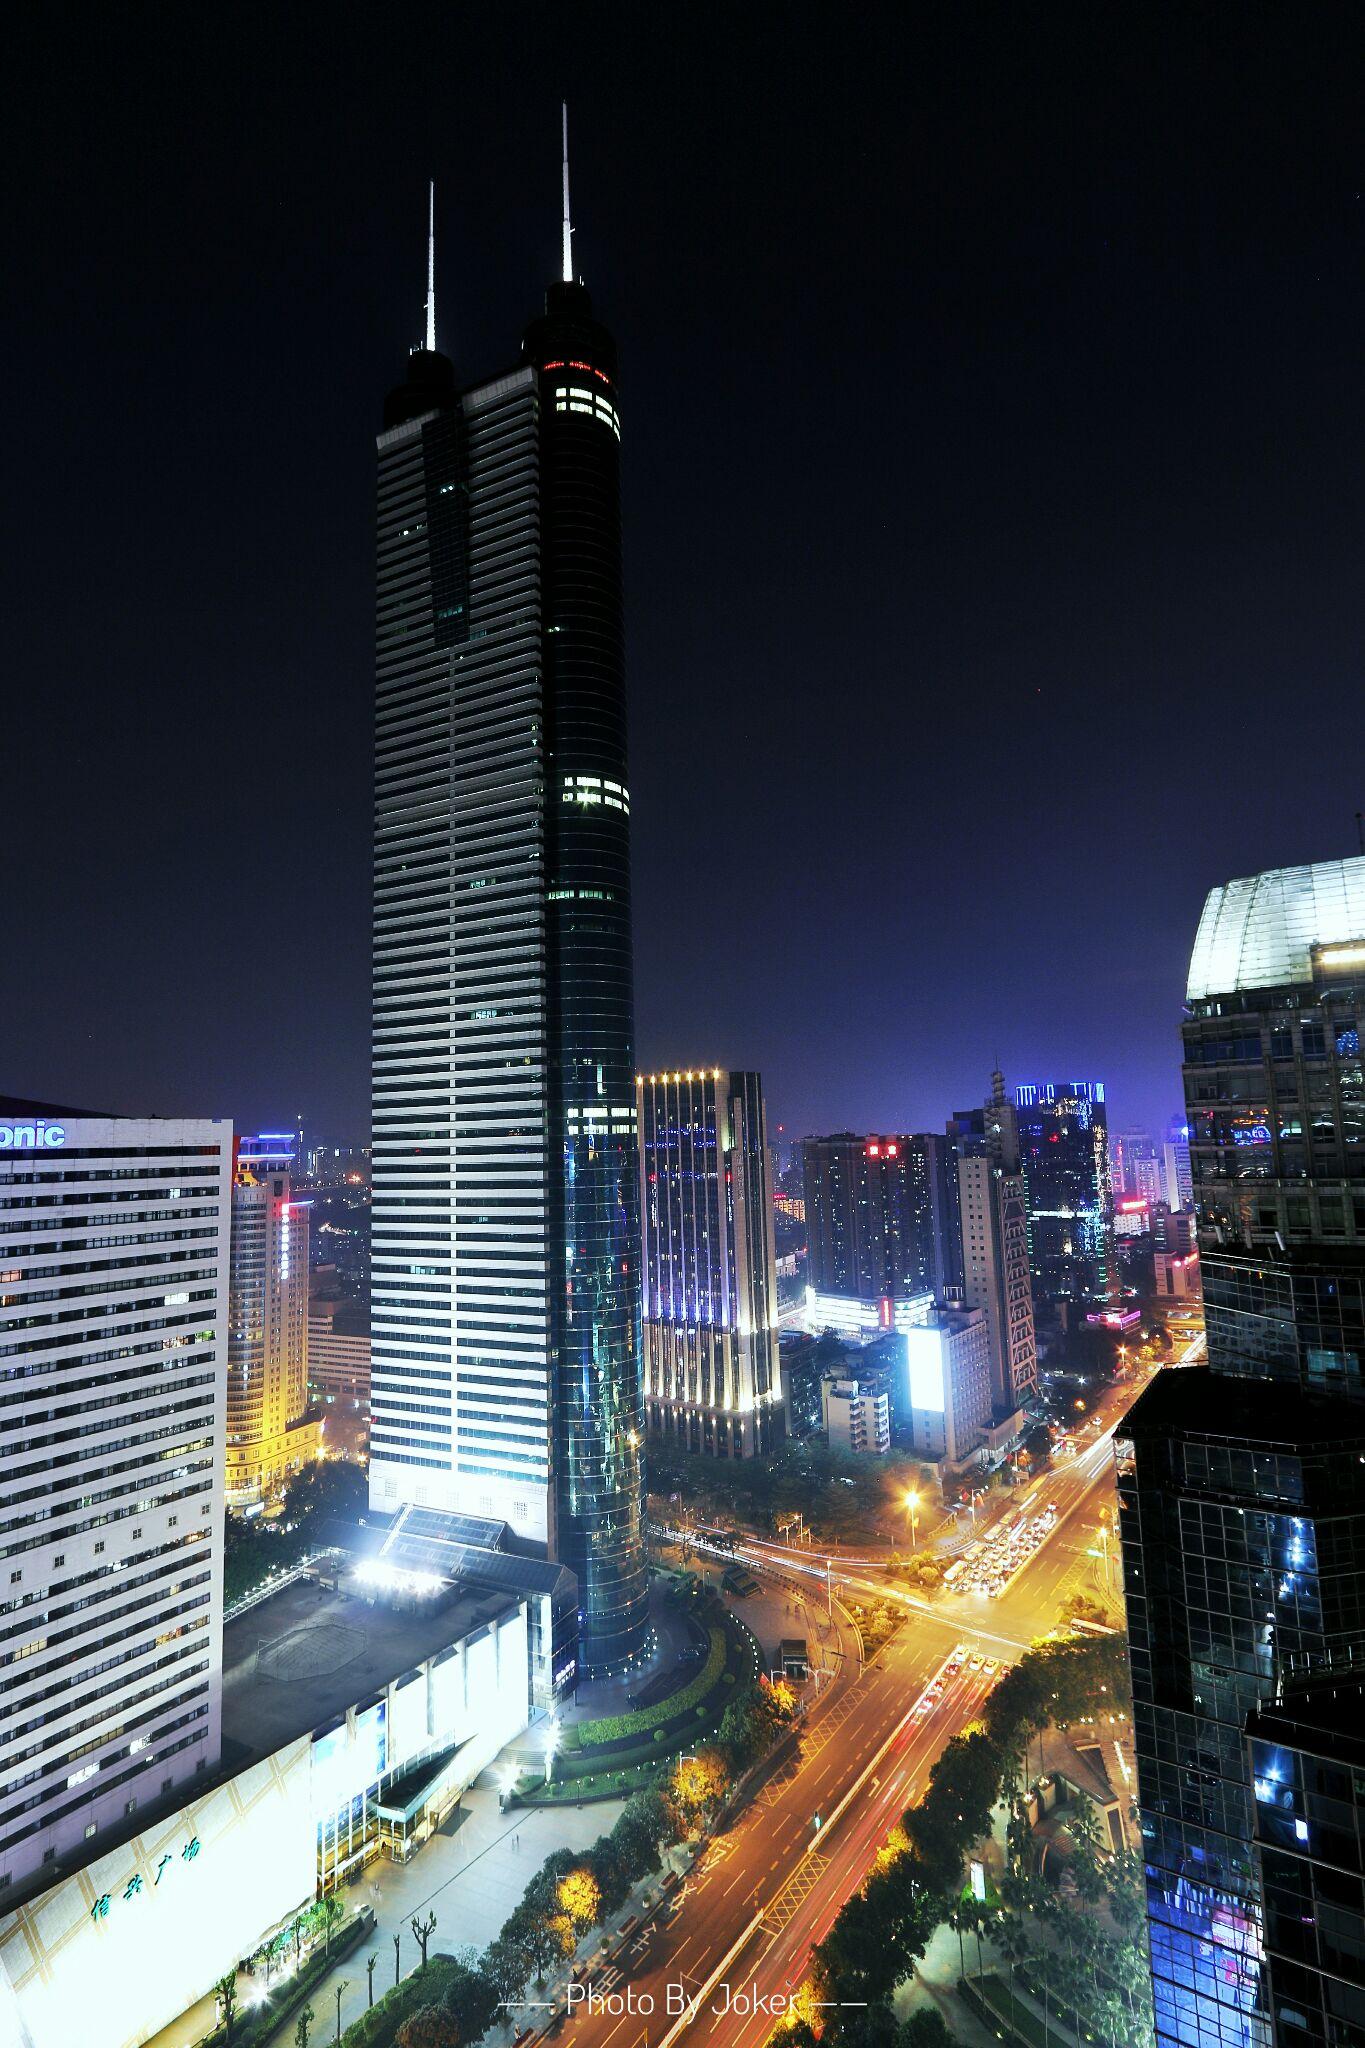 如果想在深圳拍摄城市照片，有哪些可以去的楼顶或天台? - 知乎1365 x 2048